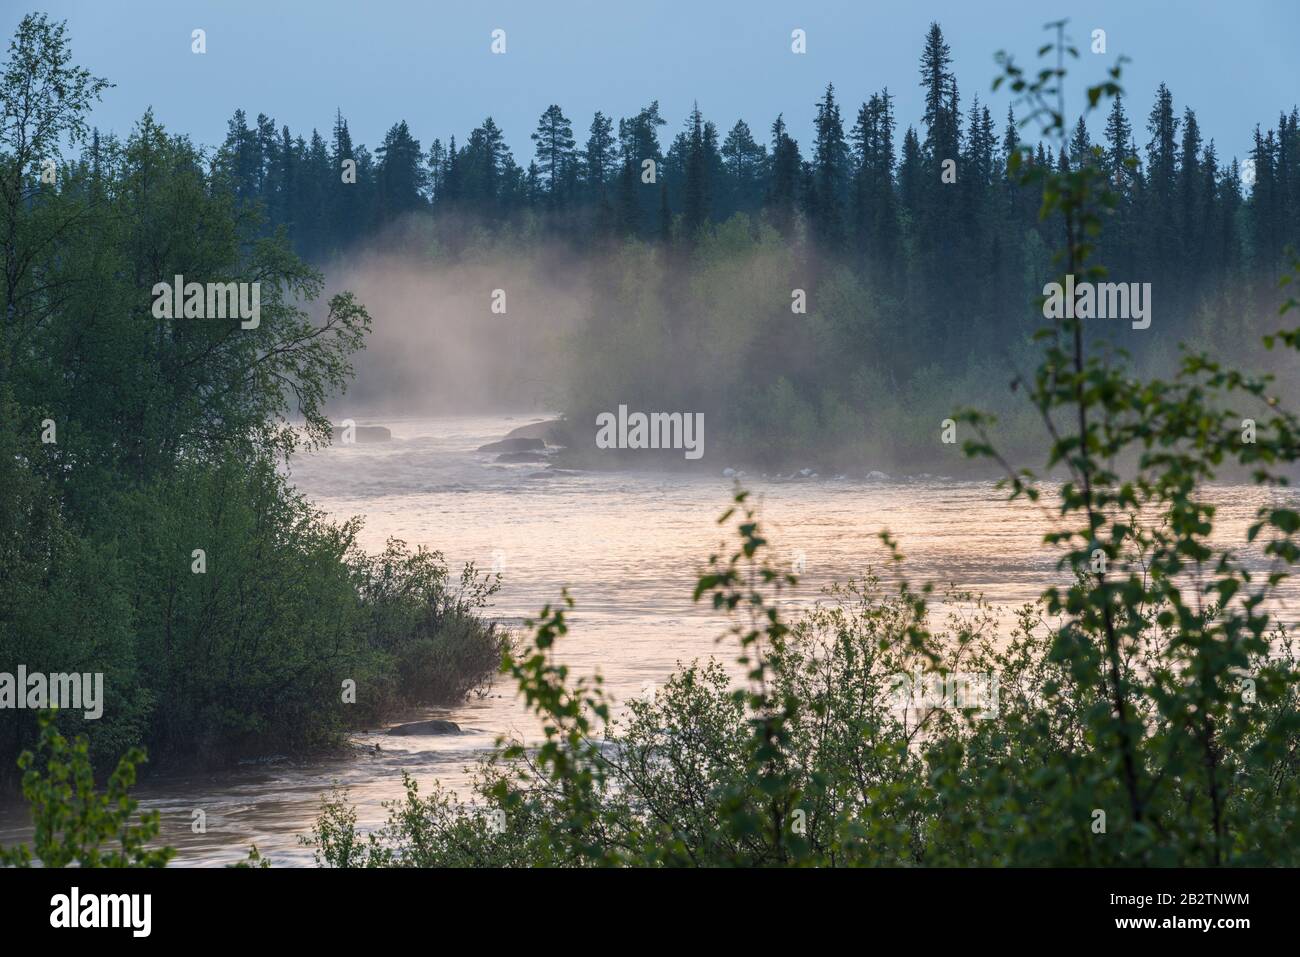 der Fluss Sjaunjaaedno (Sjaunjaaelven), Sjaunja Naturreservat, Welterbe Laponia, Norrbotten, Lappland, Schweden, Juni 2014 Stock Photo